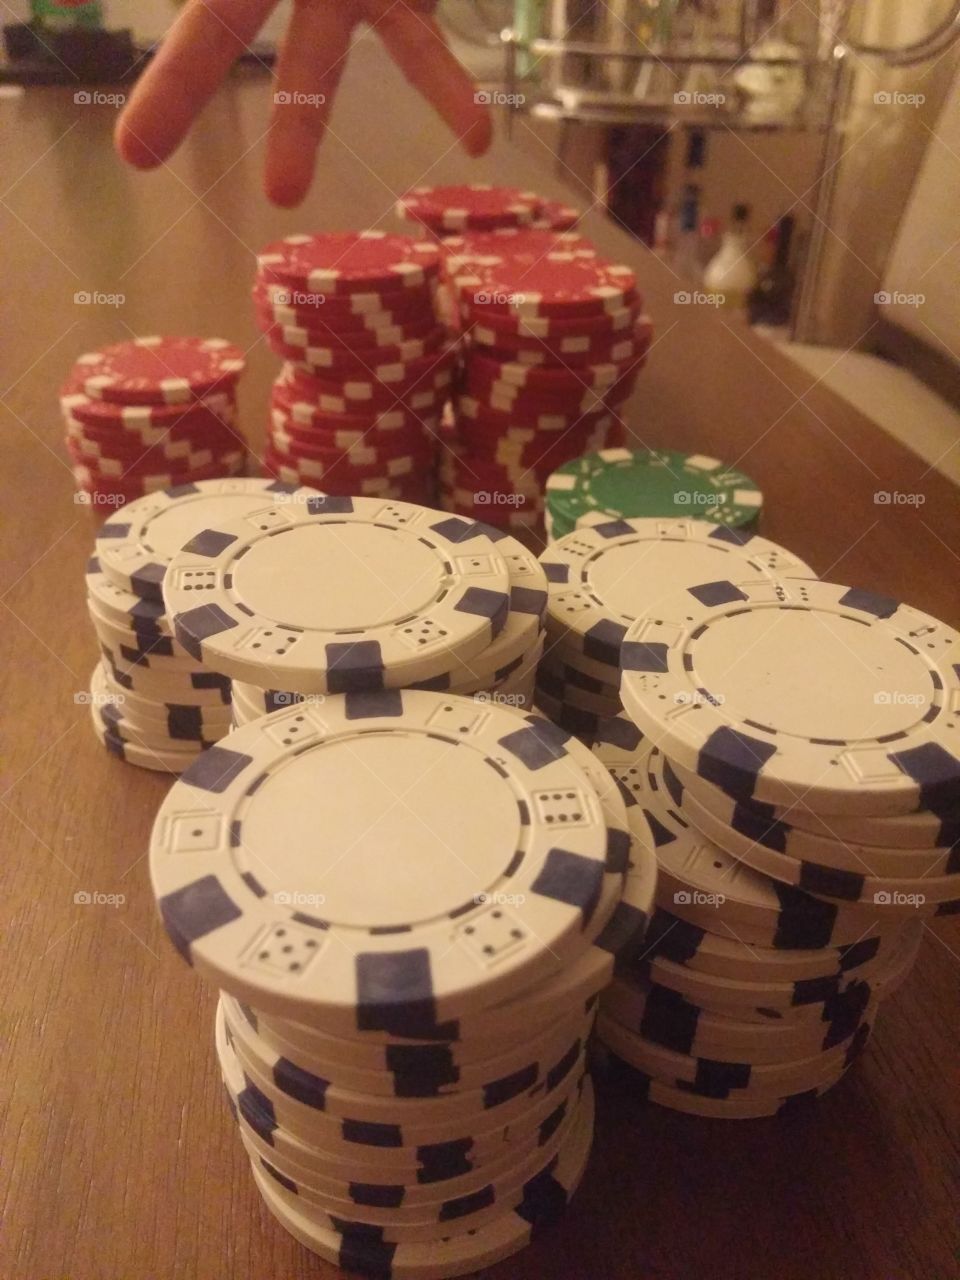 Poker night